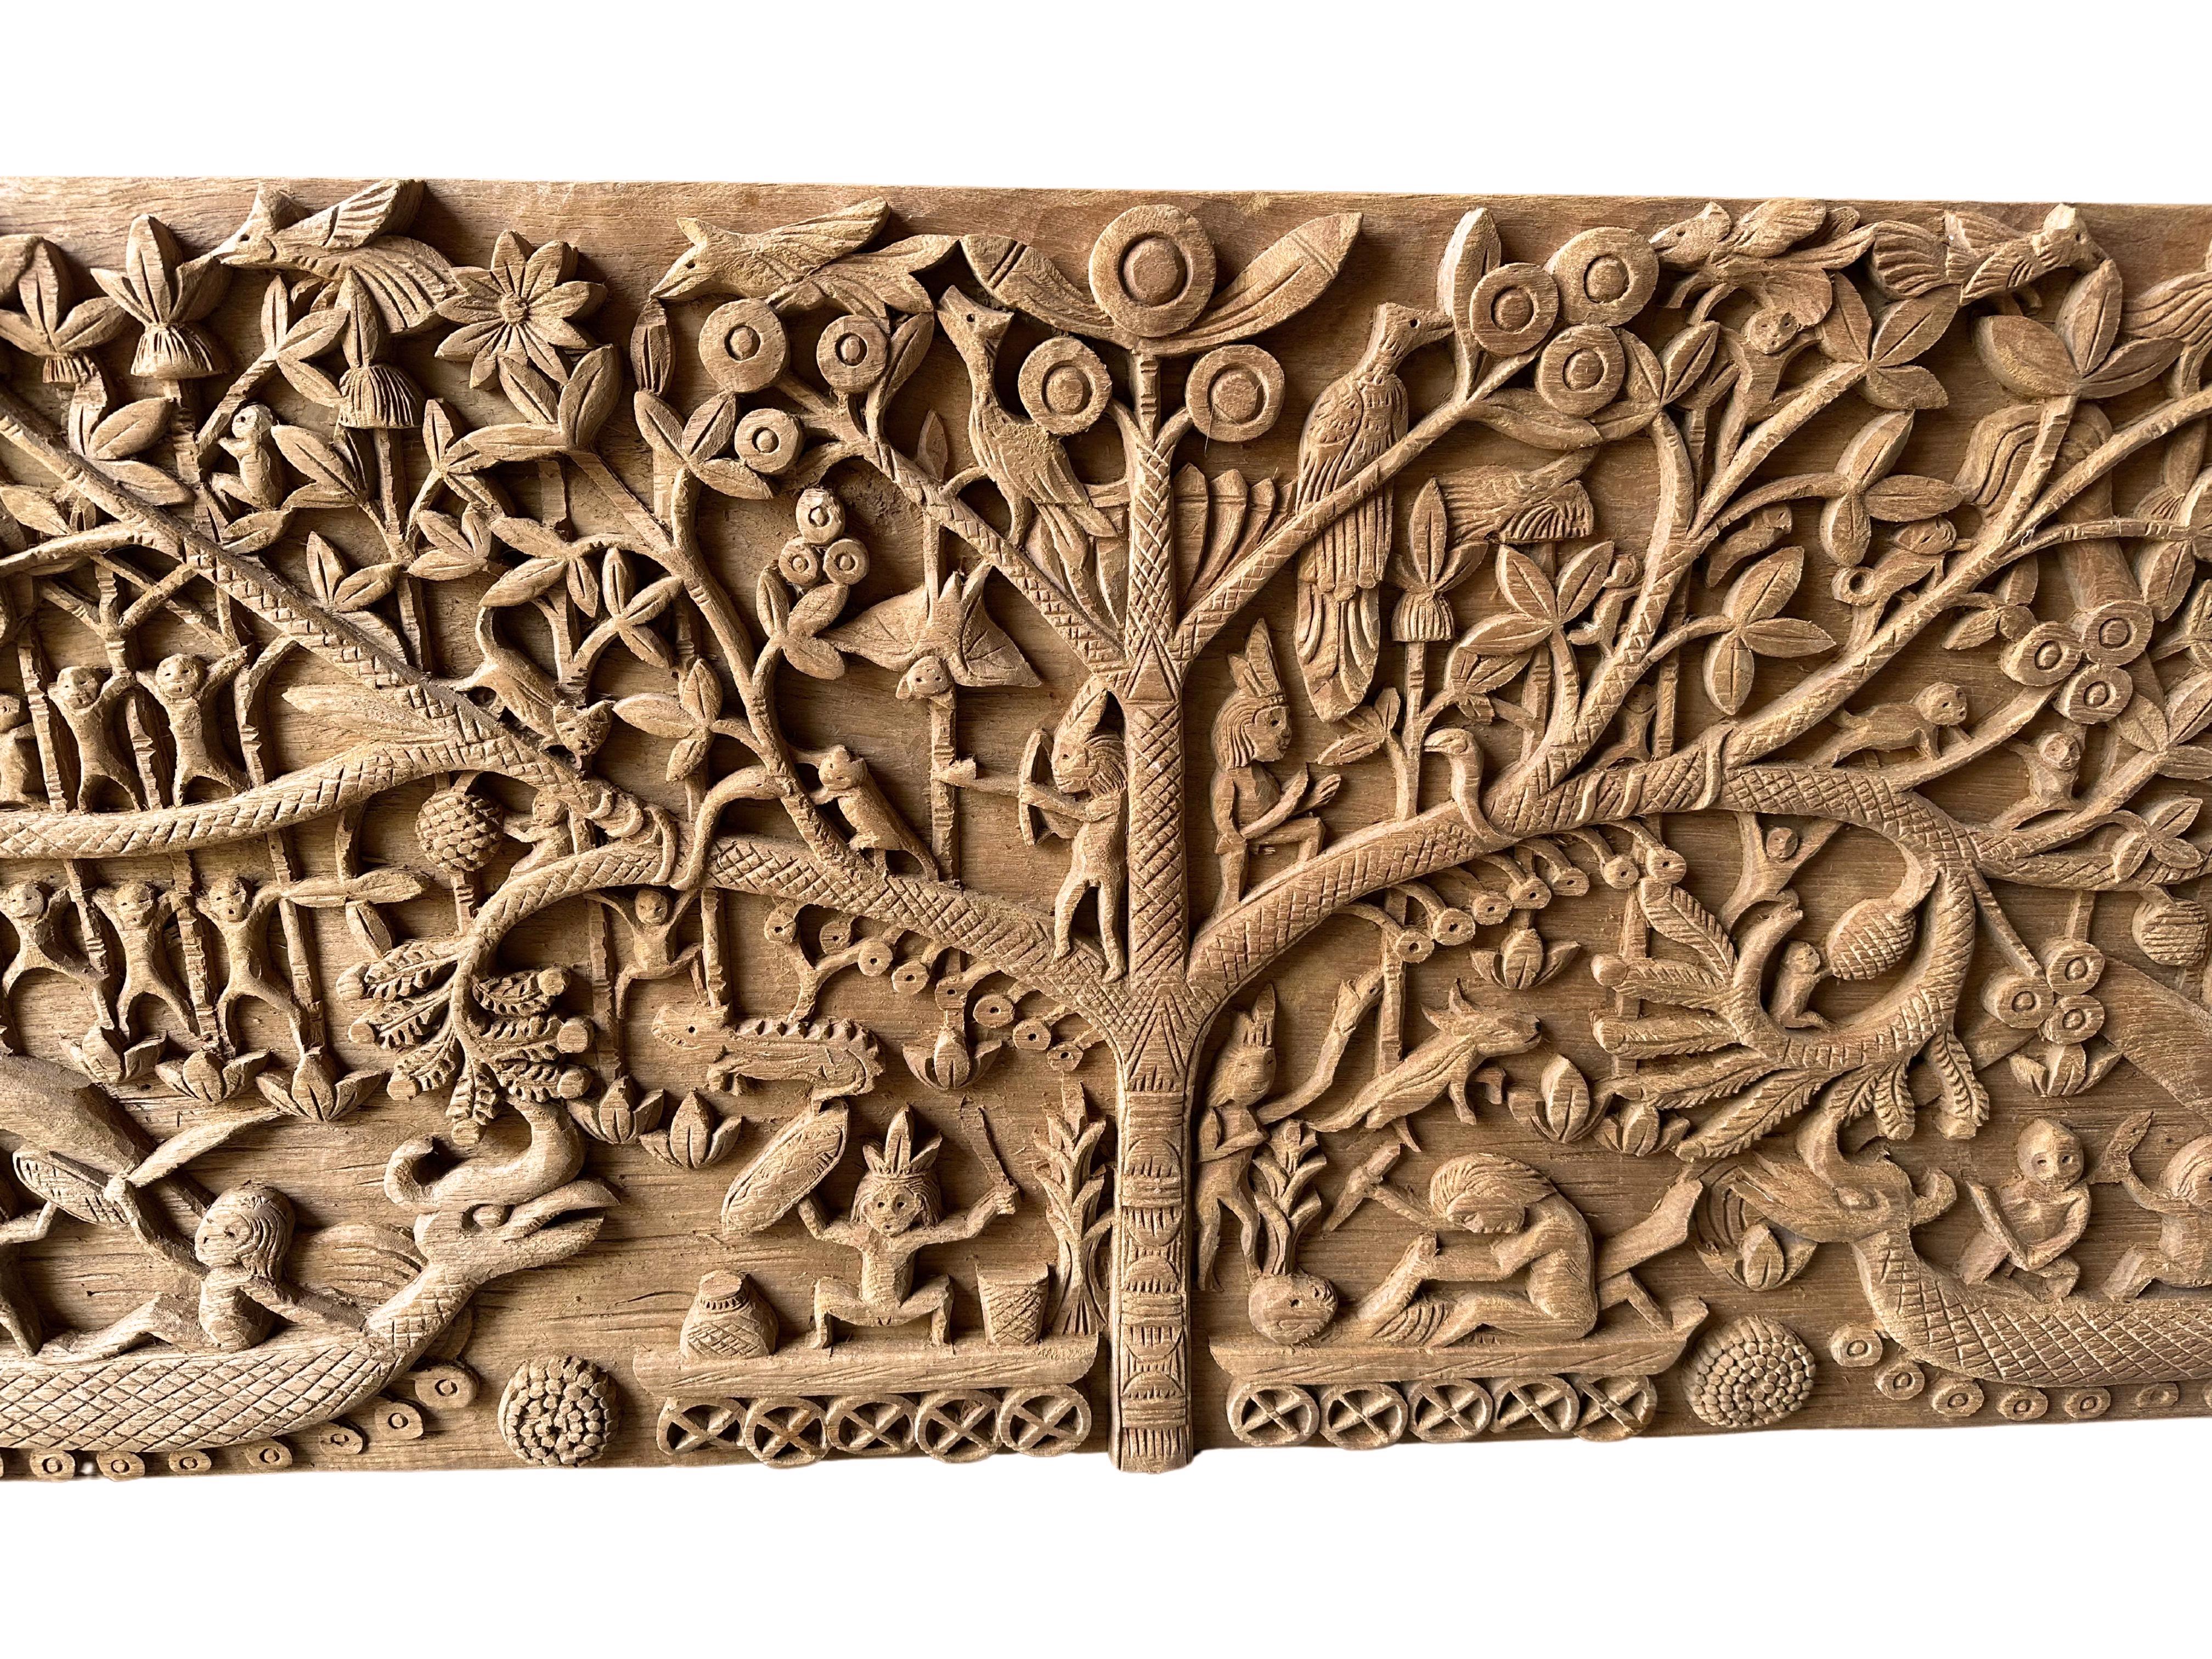 Organic Modern Hand-Carved Teak Wood Sculpture Panel Depicting Dayak Mythology For Sale